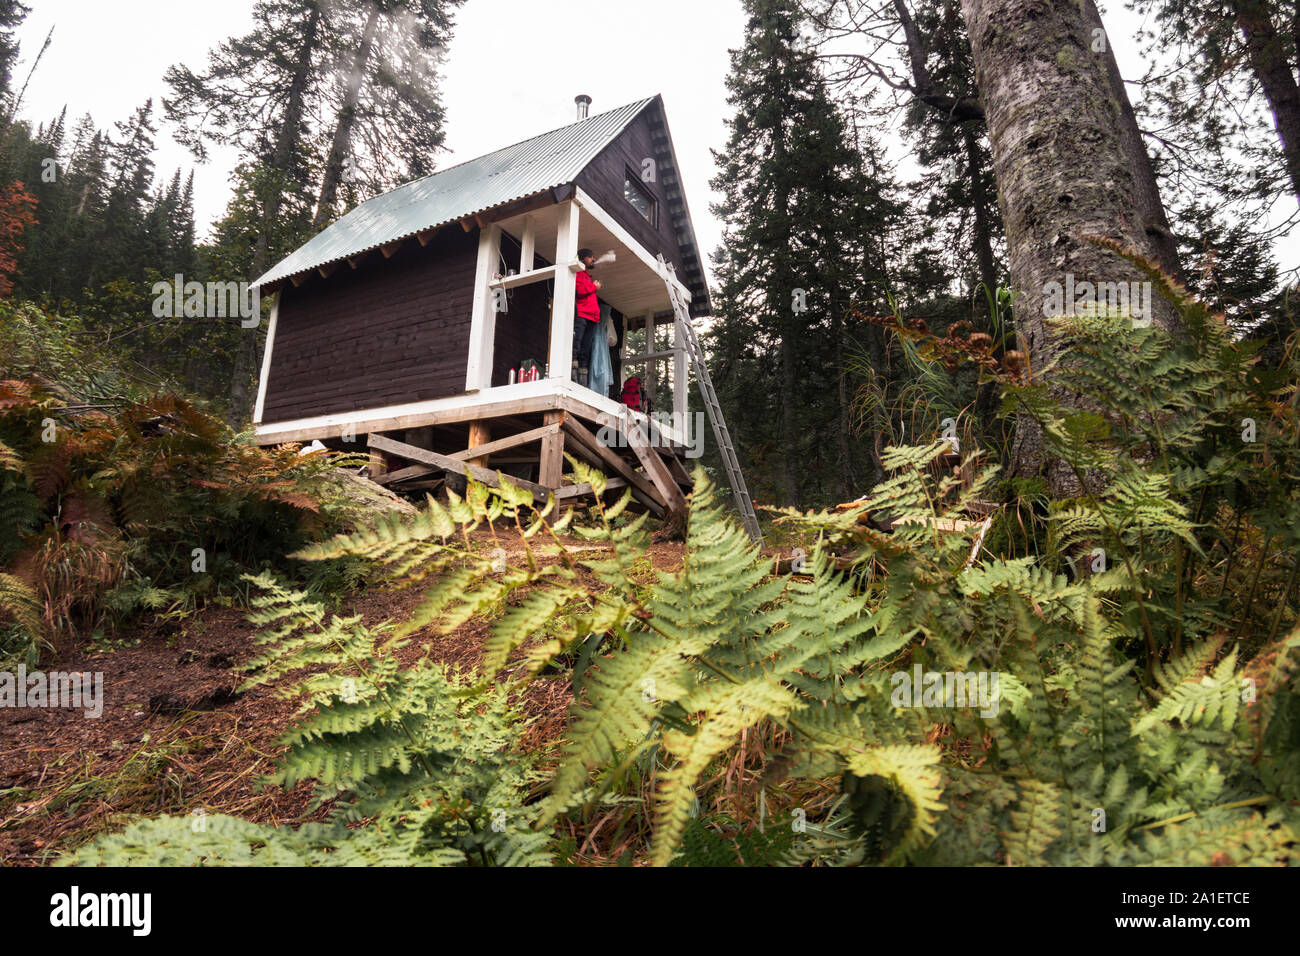 Schwarze Hütte in einer waldreichen Umgebung im Herbst Saison anmelden. Stockfoto